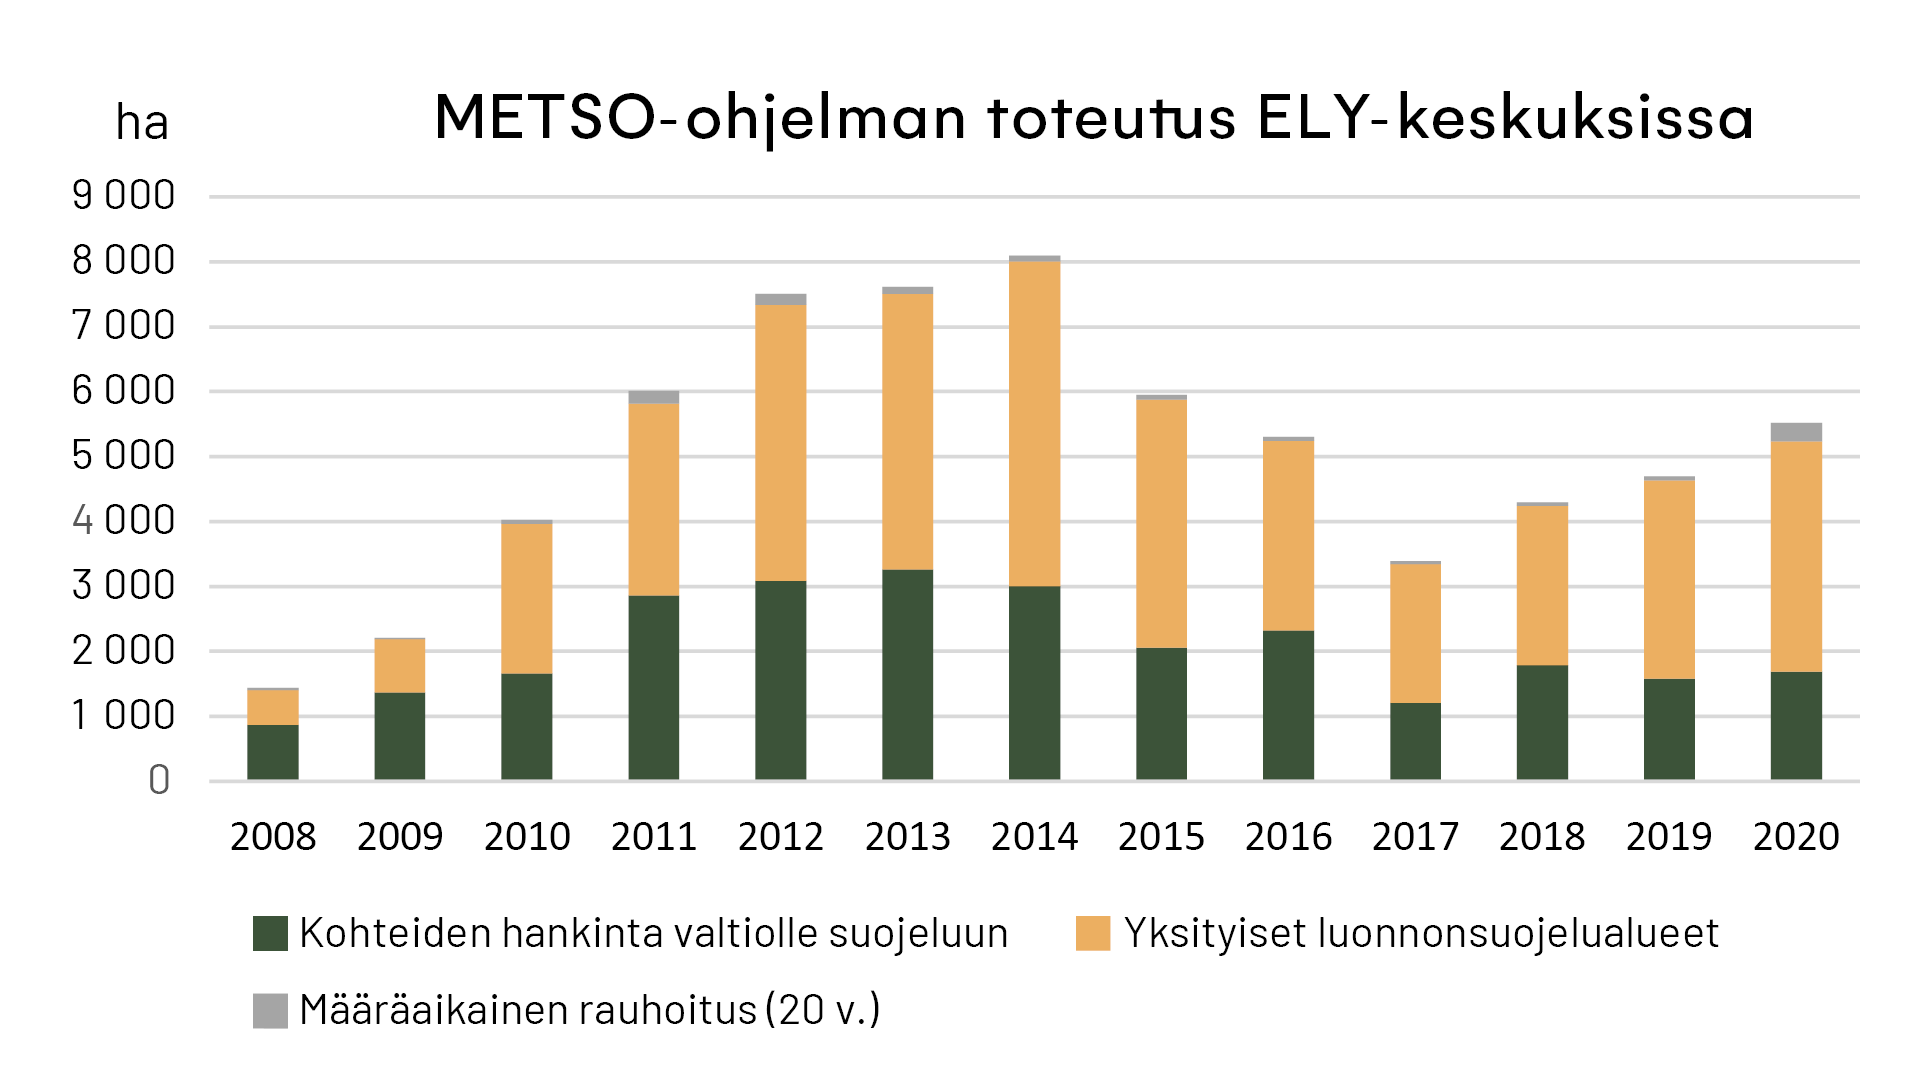 Pylväsdiagrami, jossa näkyy, miten paljon ELY-keskukset ovat toteuttaneet METSO-ohjelmaa vuosina 2008-2020.